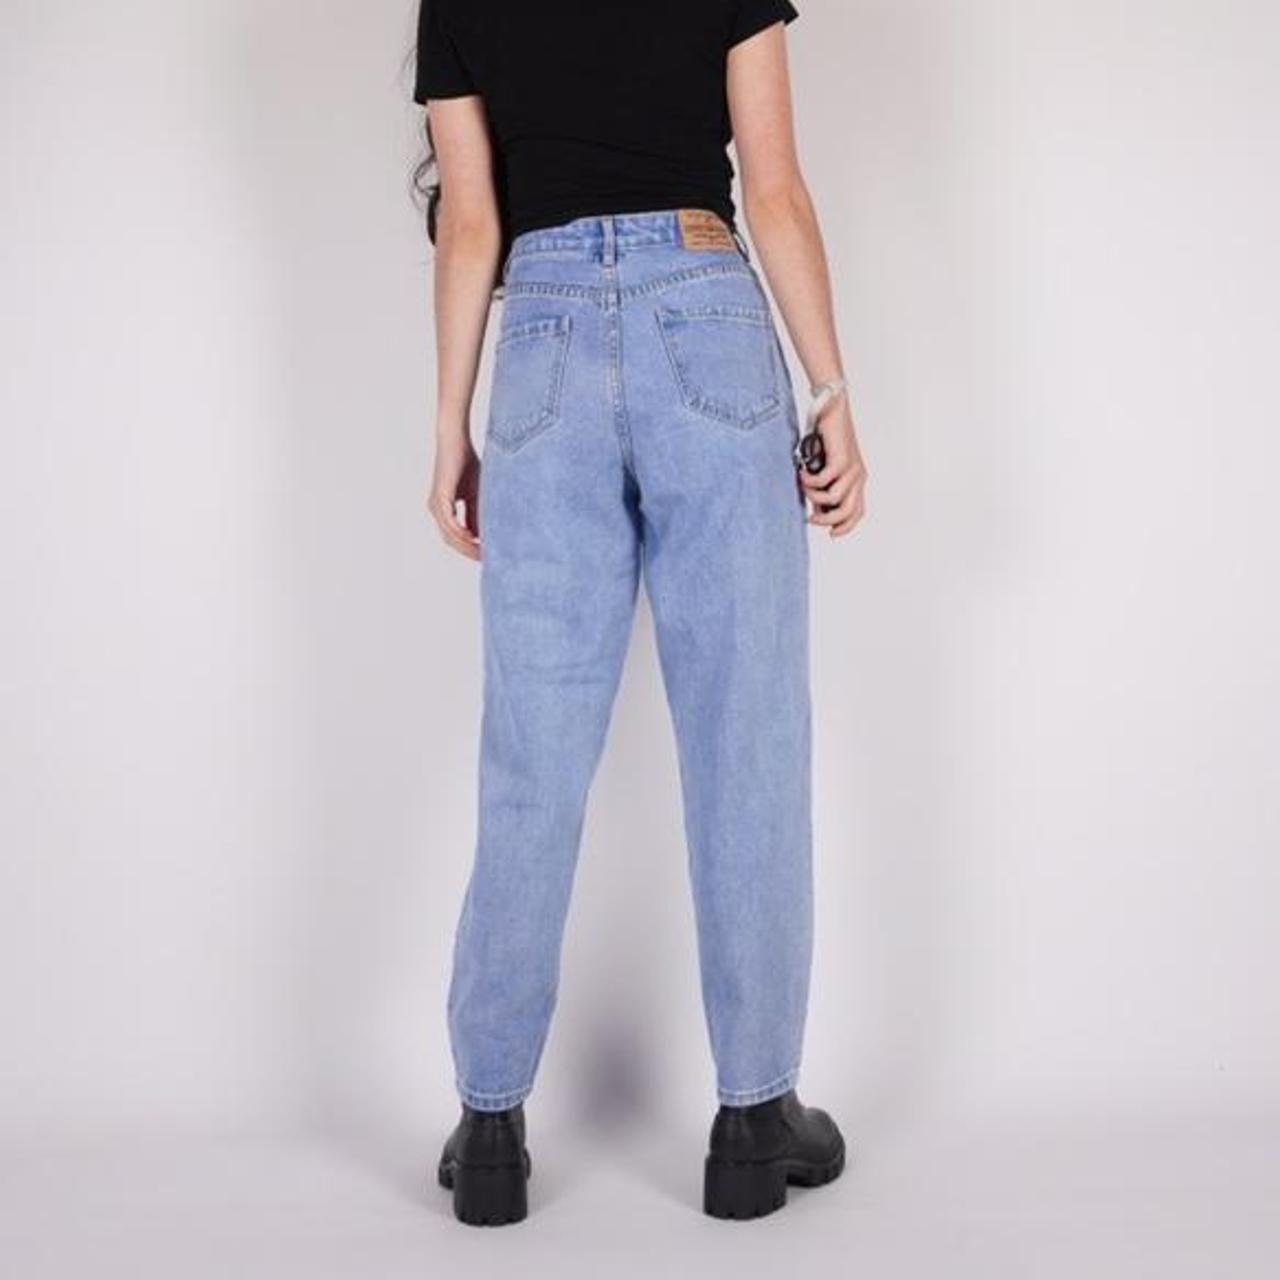 vintage 90s blue denim high waisted jeans Brand:... - Depop